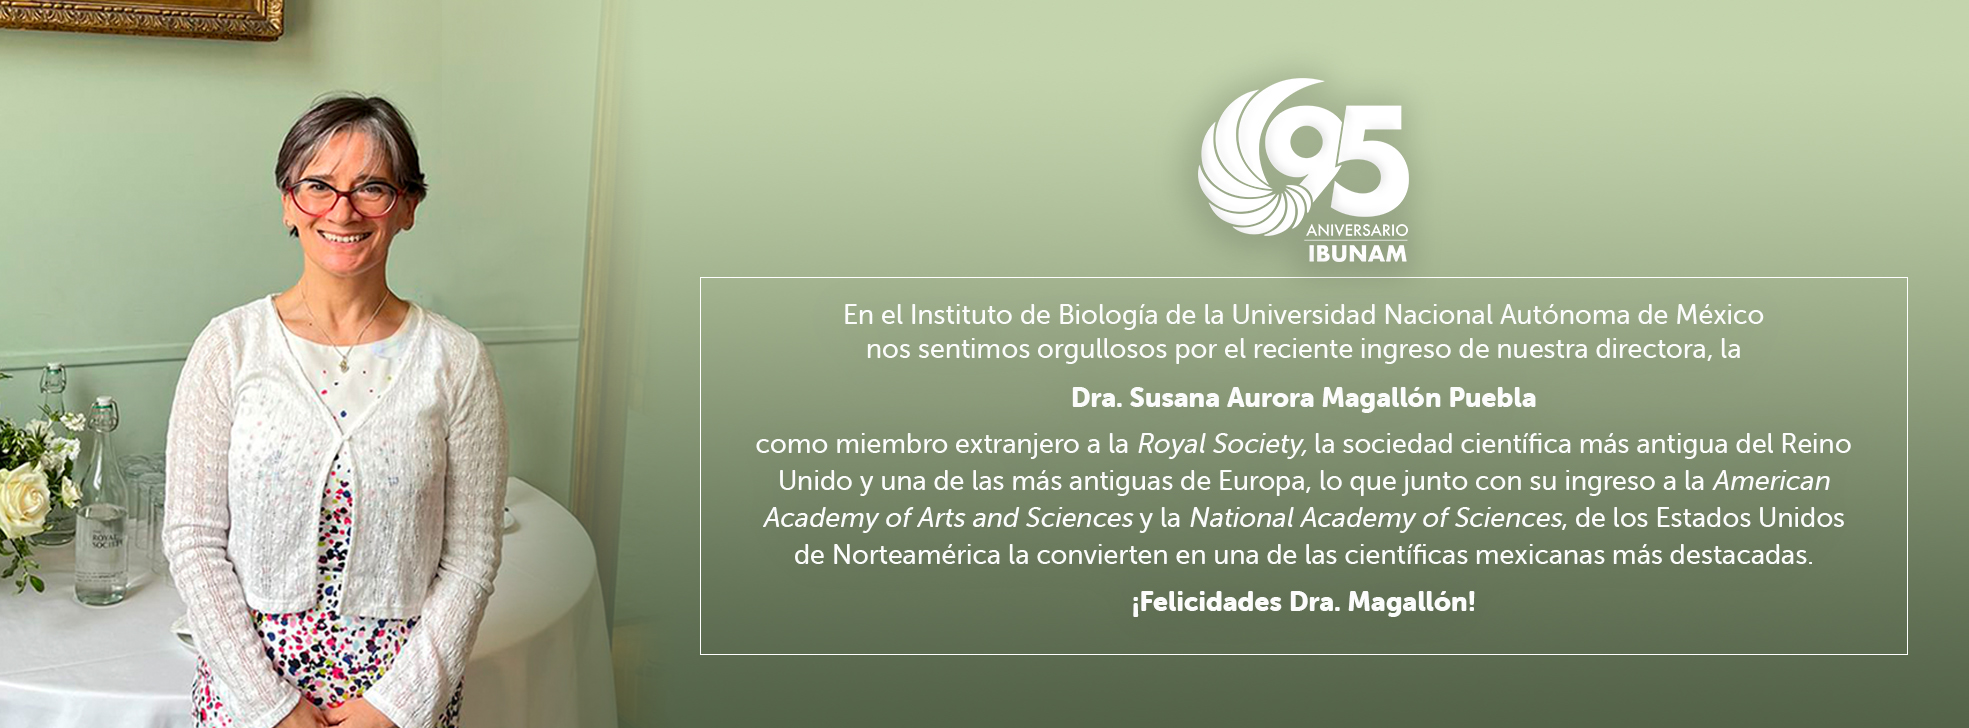 Dra. Susana Magallón ingresa a la Royal Society - Instituto de Biología, UNAM